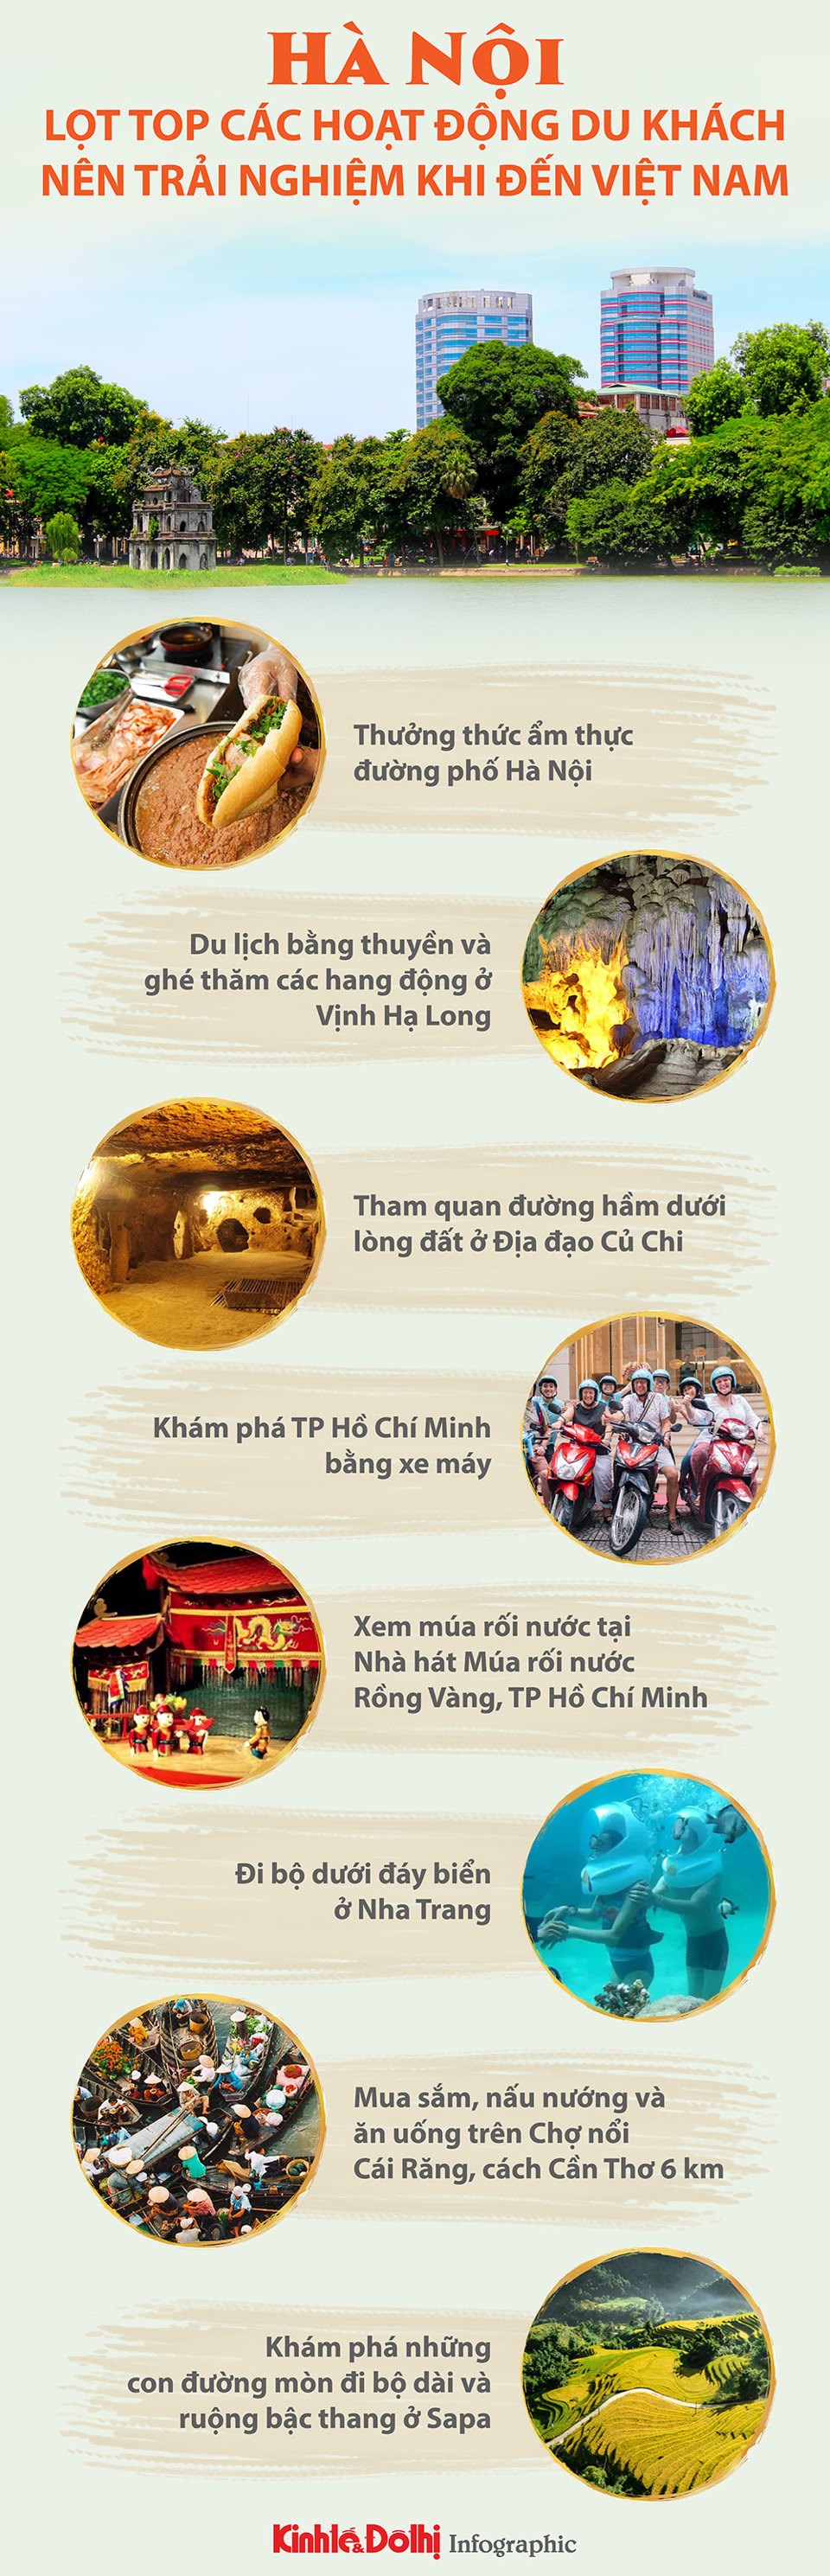 Hà Nội lọt top các hoạt động du khách nên trải nghiệm khi đến Việt Nam - Ảnh 1